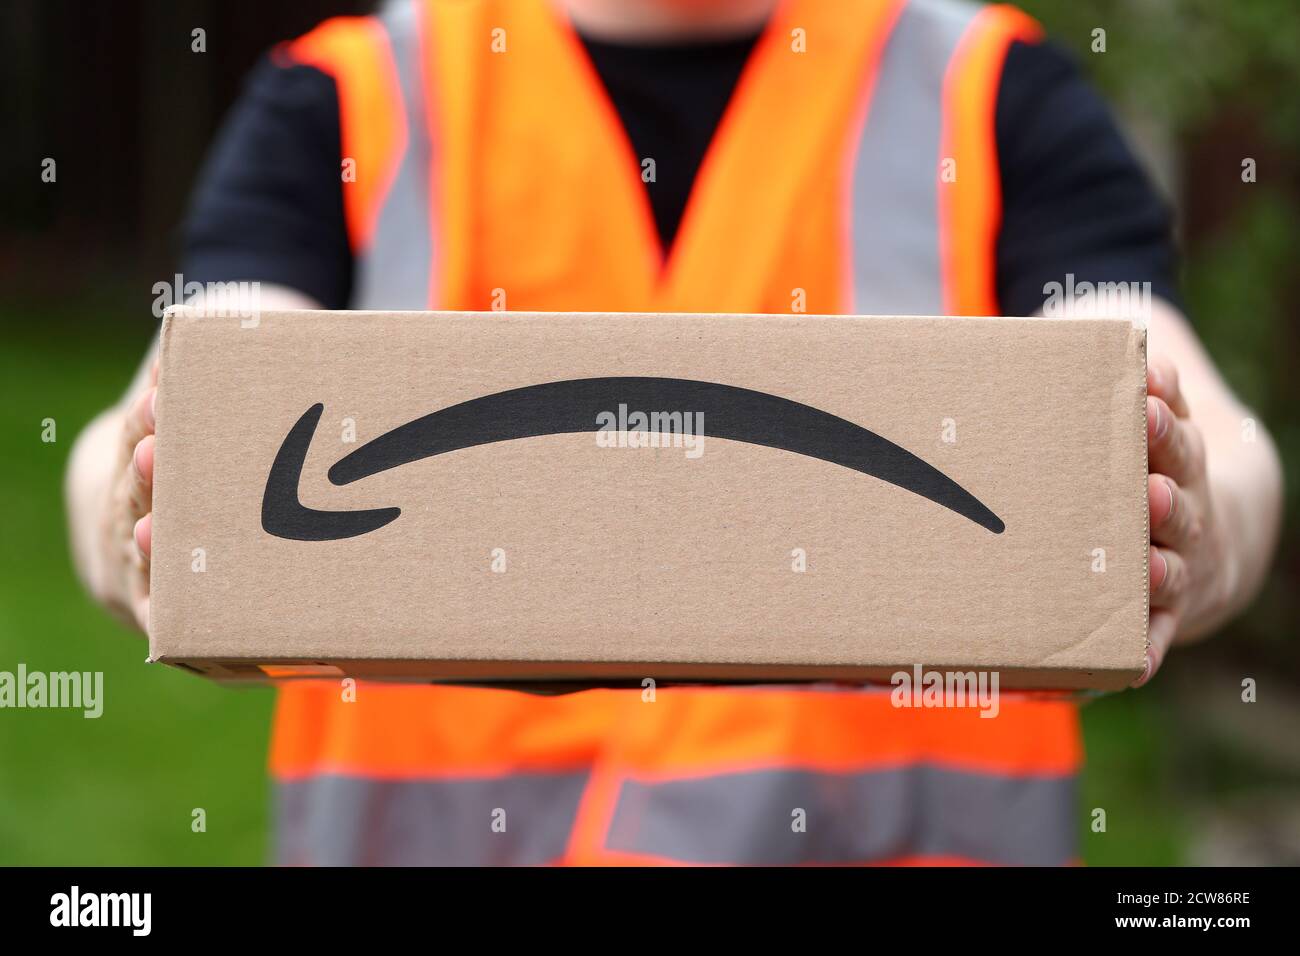 Amazon Uk Stockfotos und -bilder Kaufen - Alamy